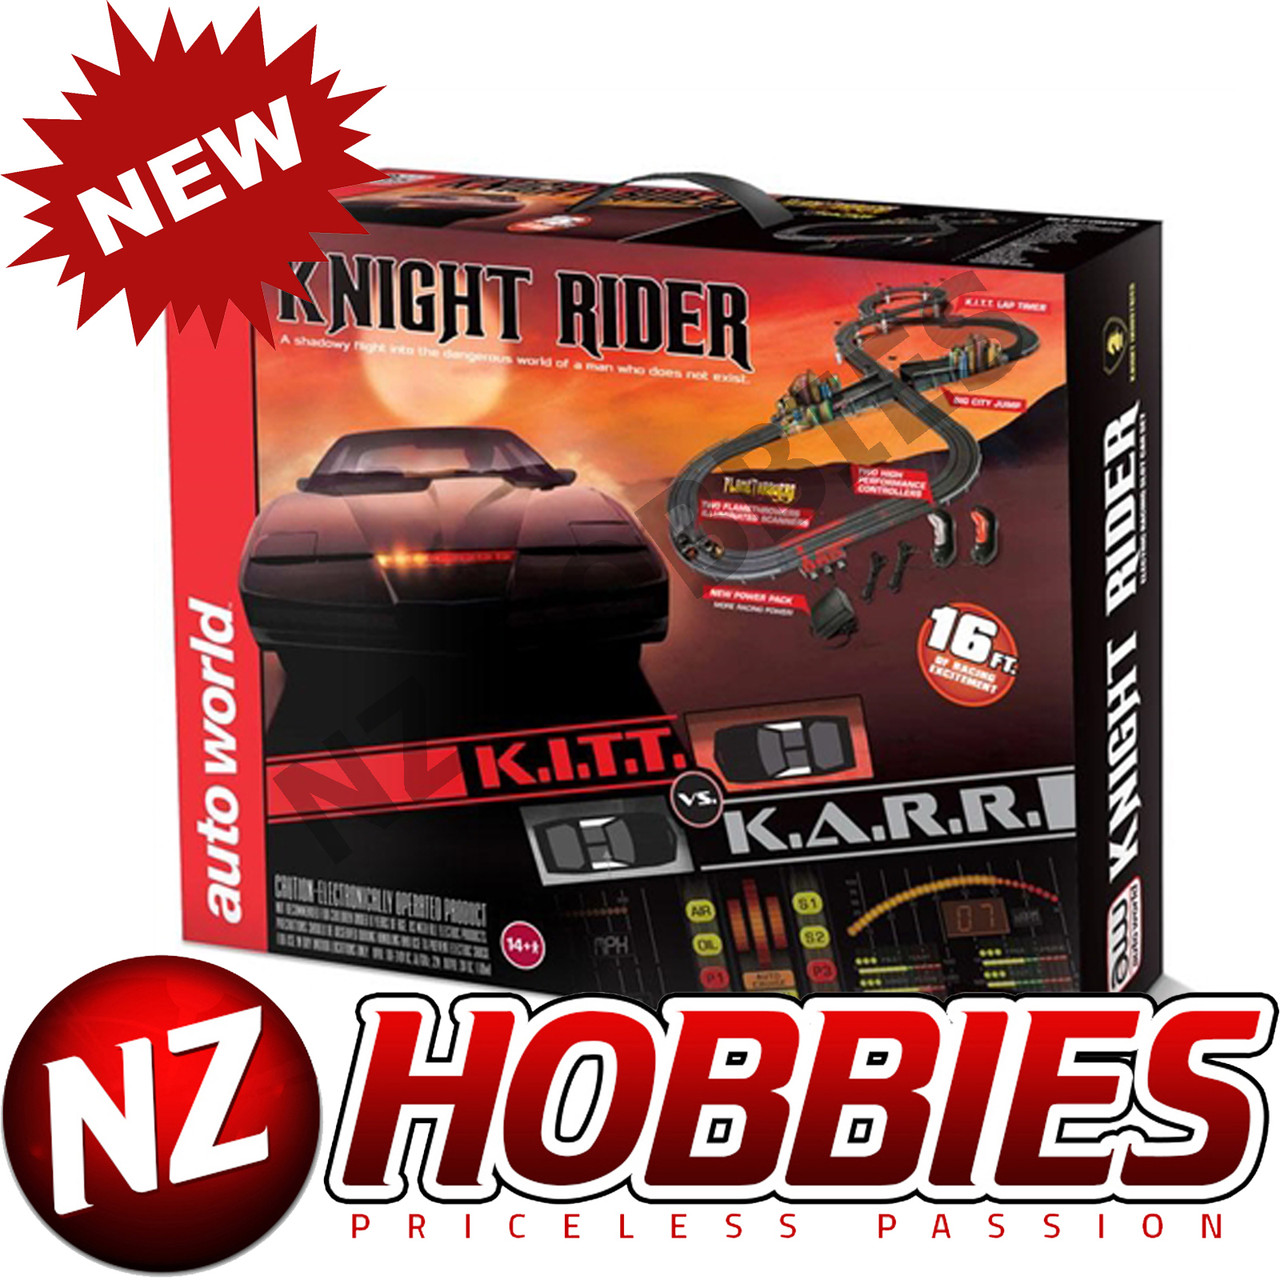 knight rider slot car